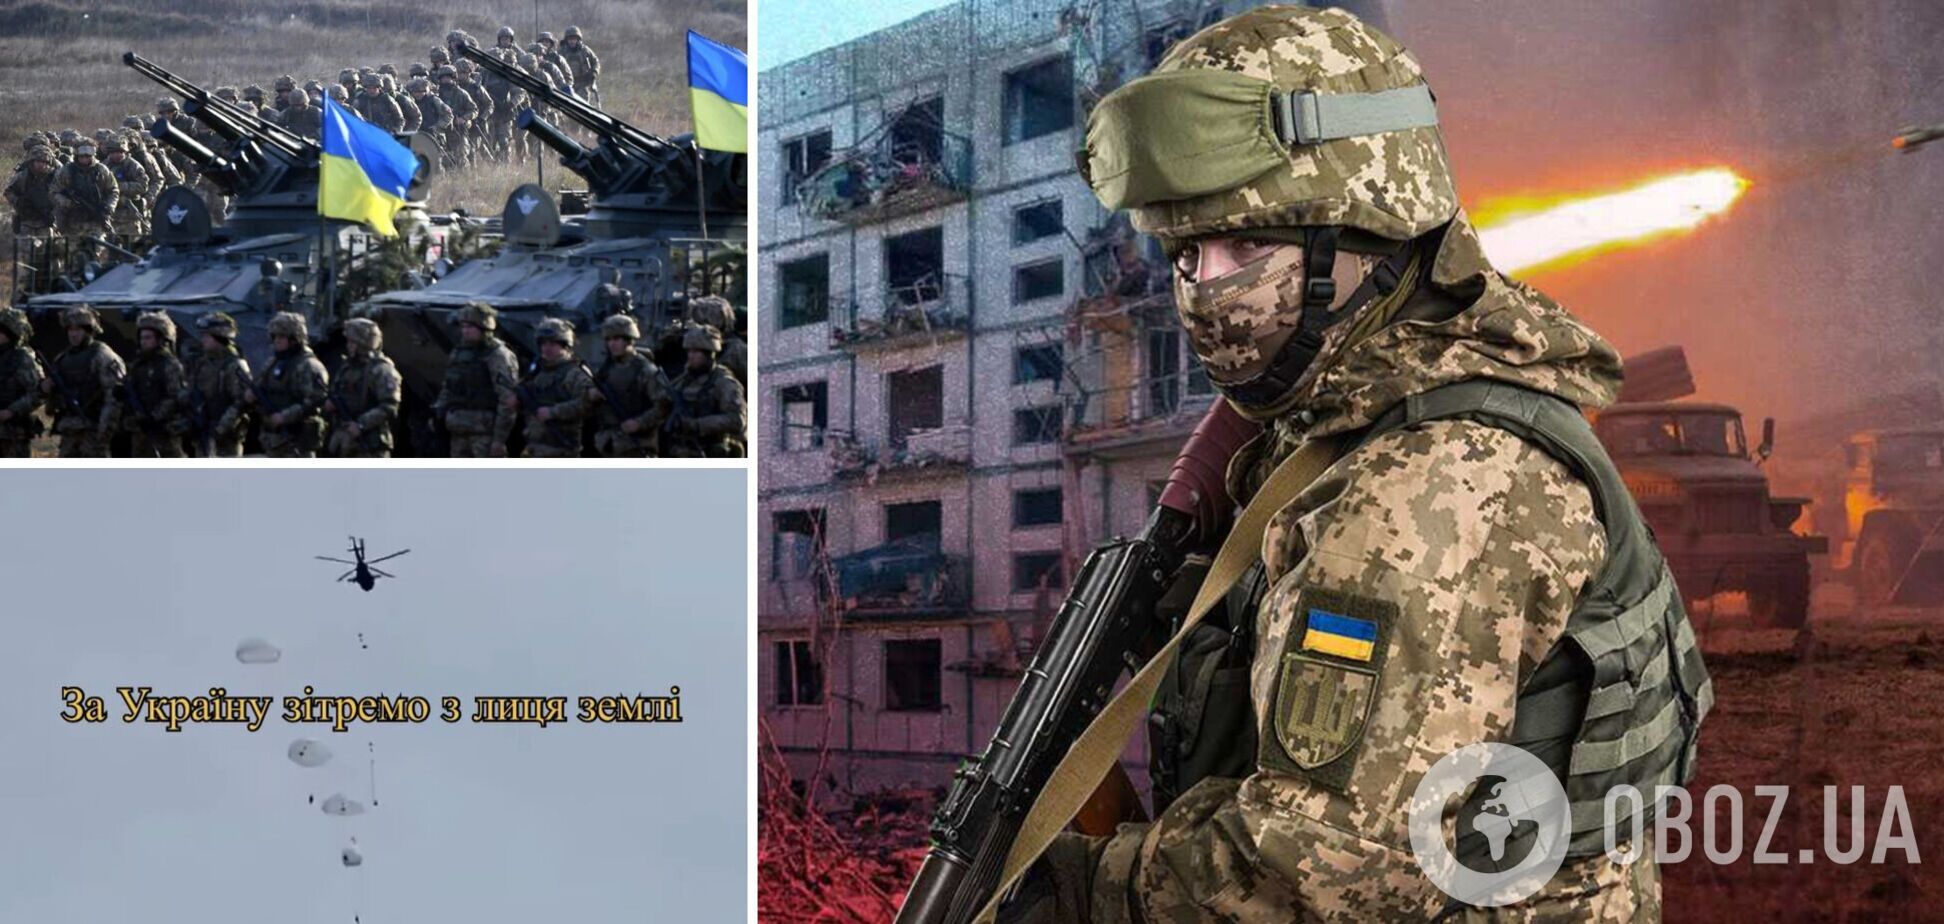 'У нас не солдаты, а киборги': появилось новое яркое видео о Вооруженных силах Украины